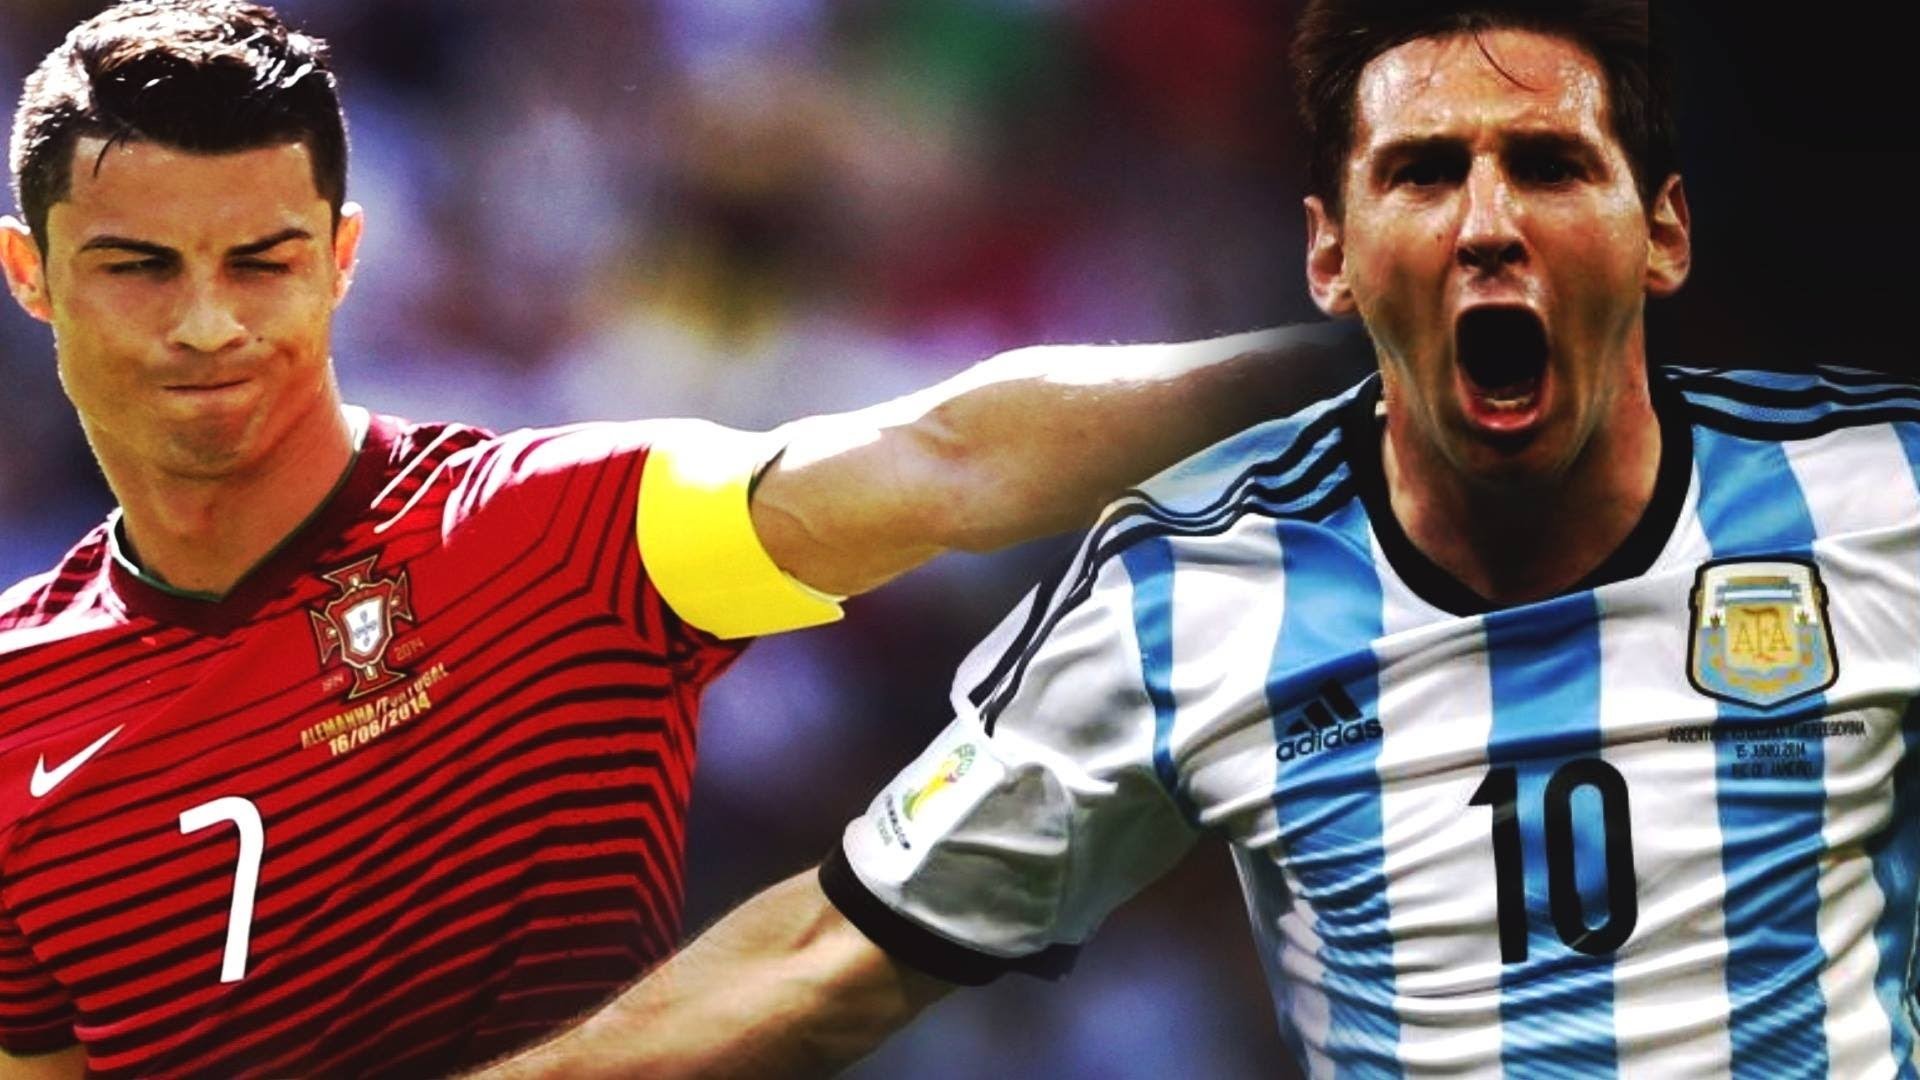 1920x1080 Cristiano Ronaldo & Lionel Messi - World Cup Brazil Battle 2014 HD - YouTube